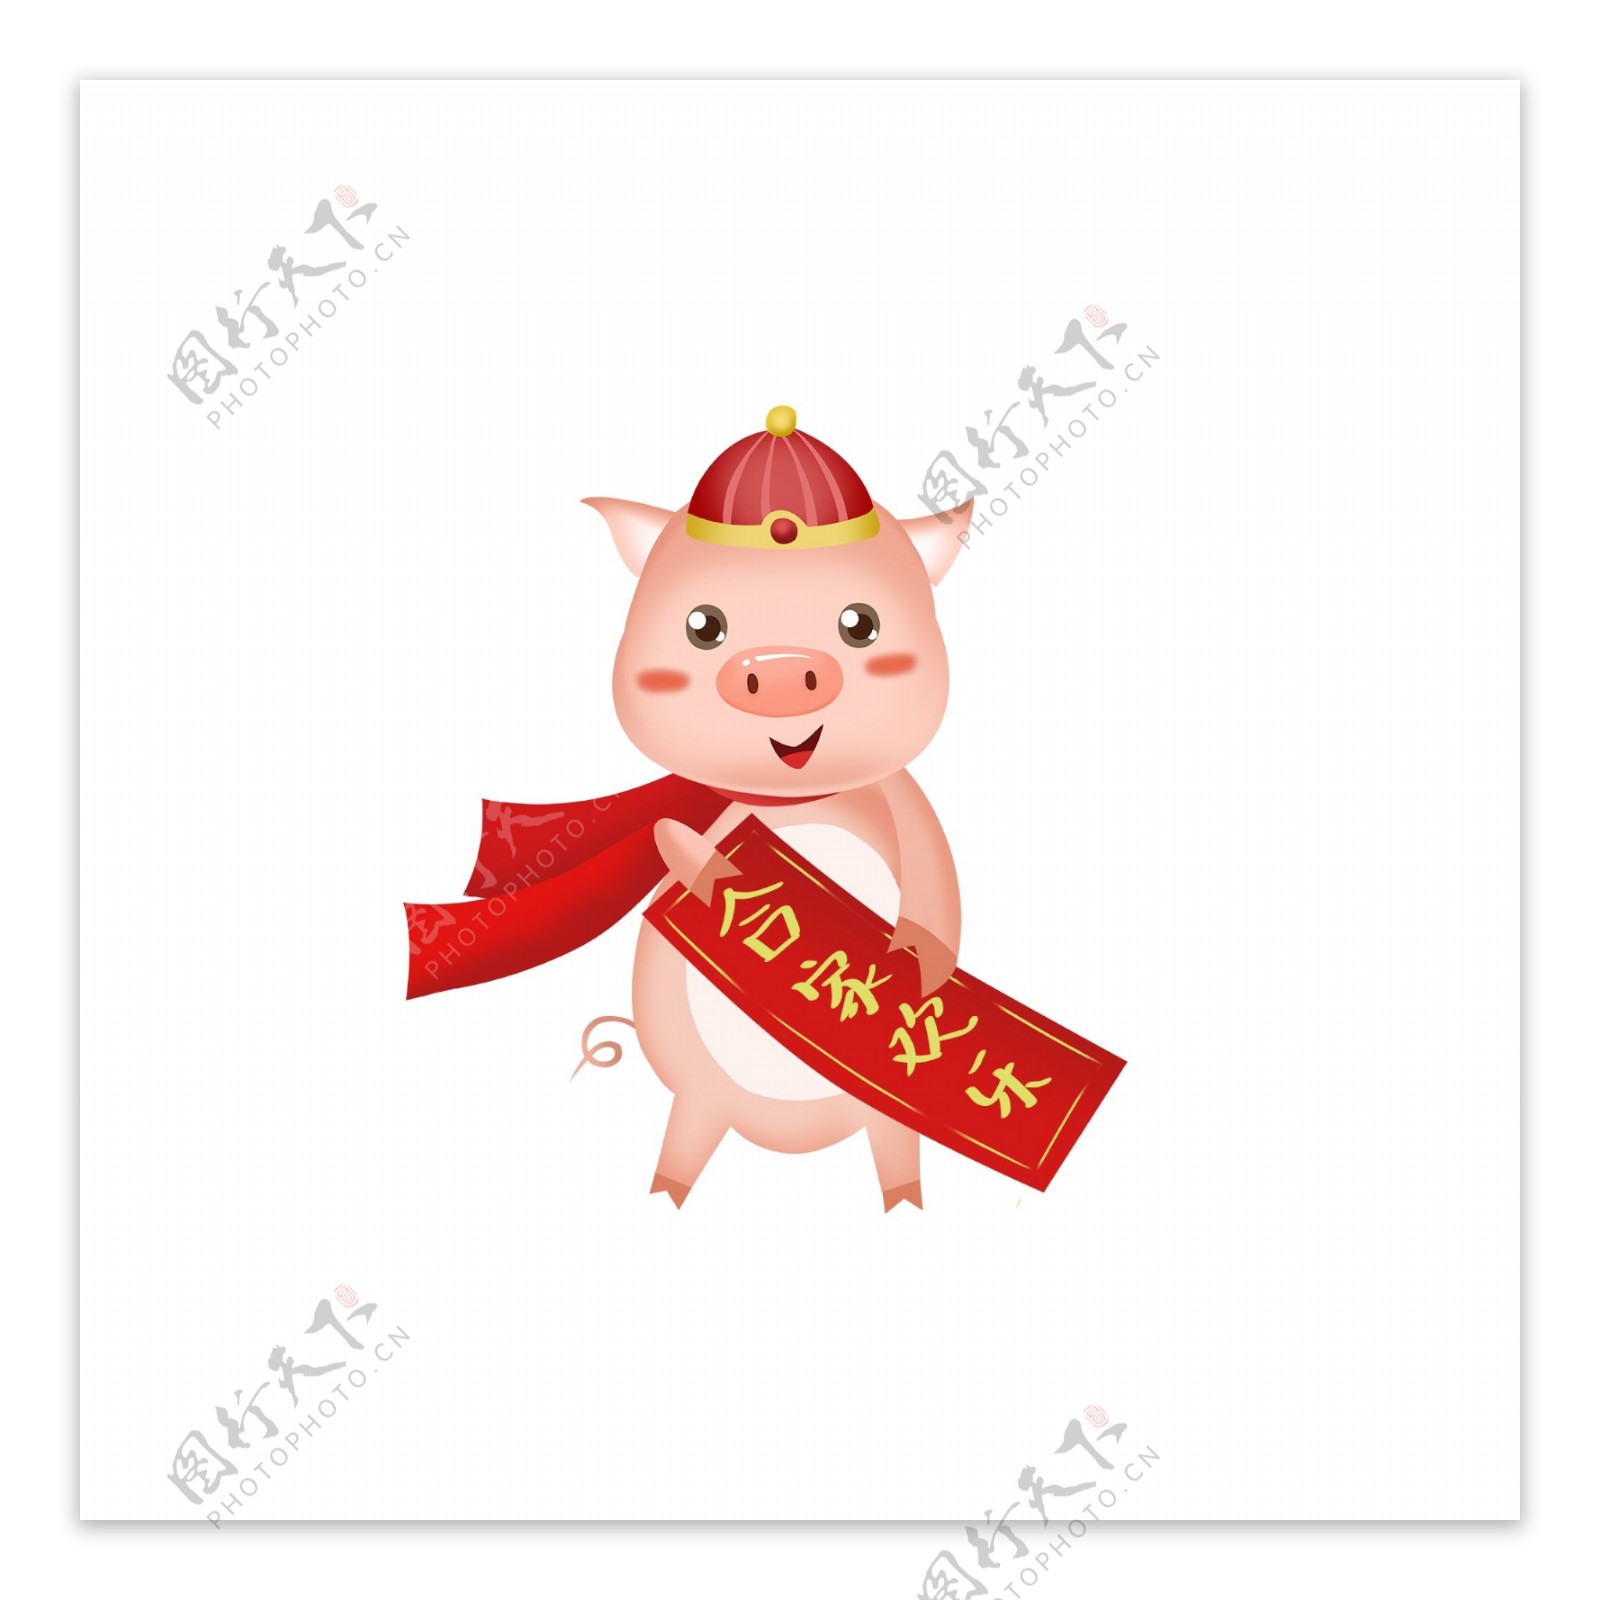 猪年阖家欢乐贺岁的小猪卡通设计